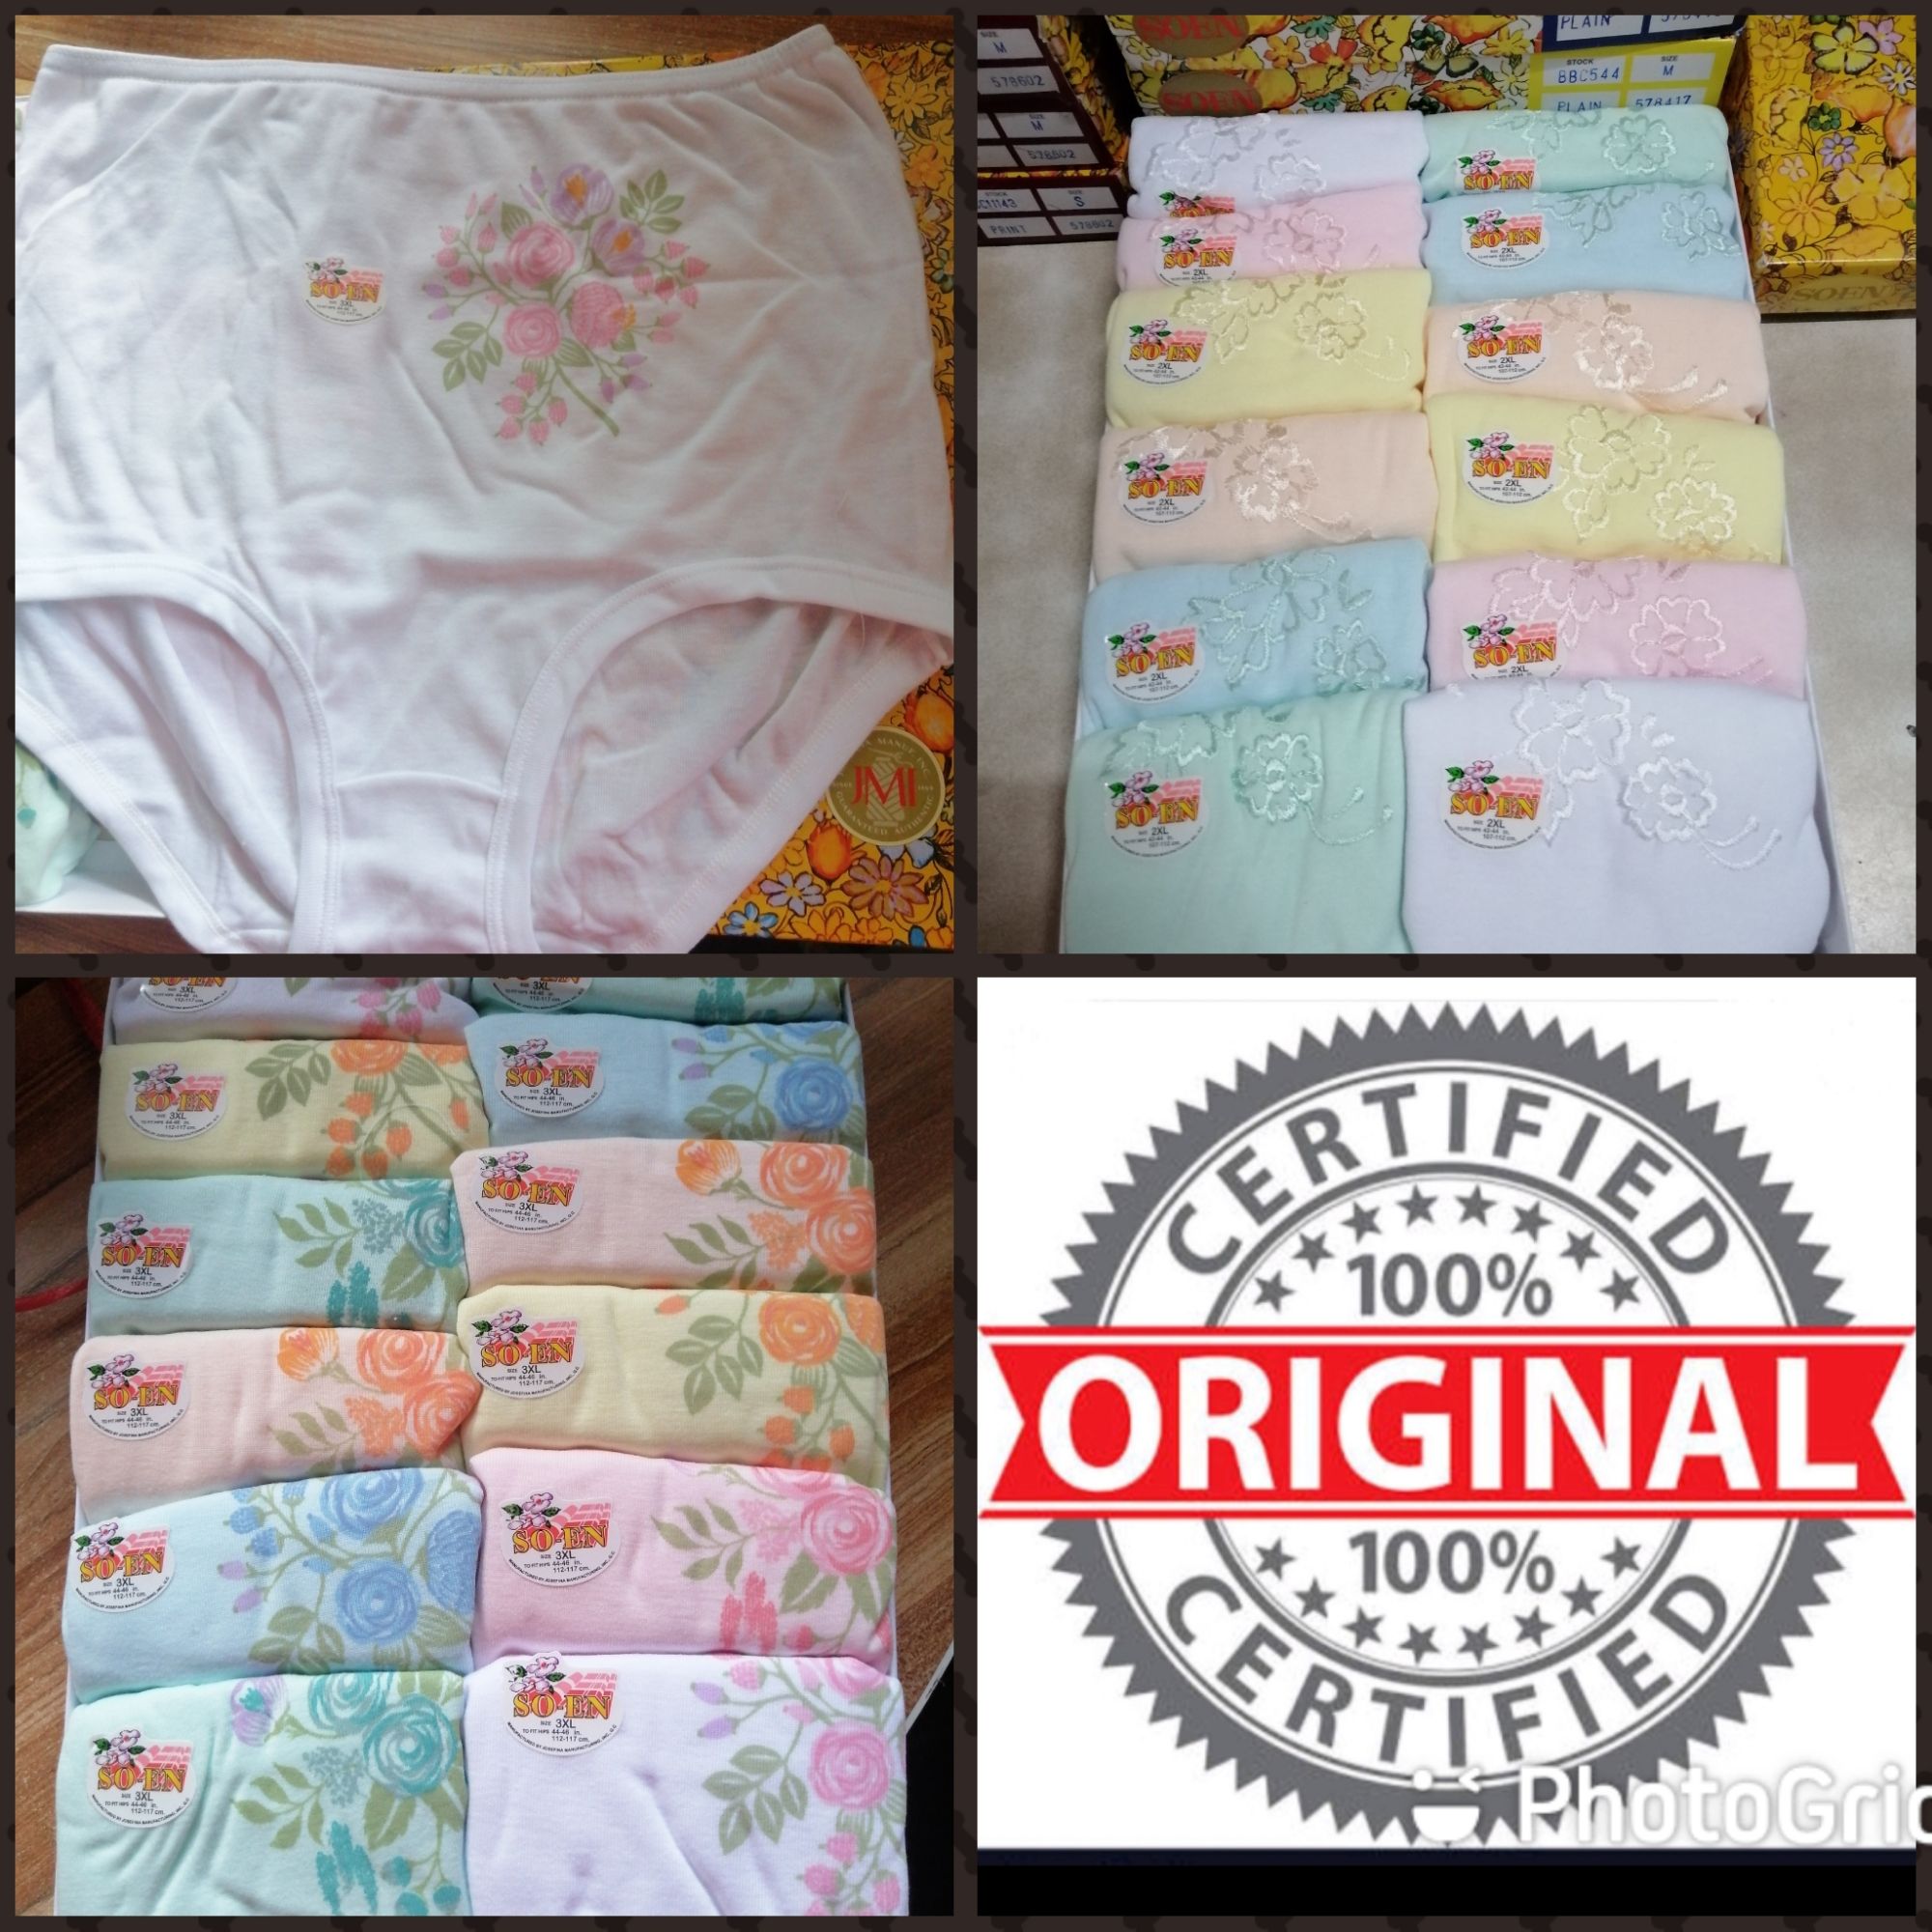 Original soen semi panty No garter - Djona's online shop